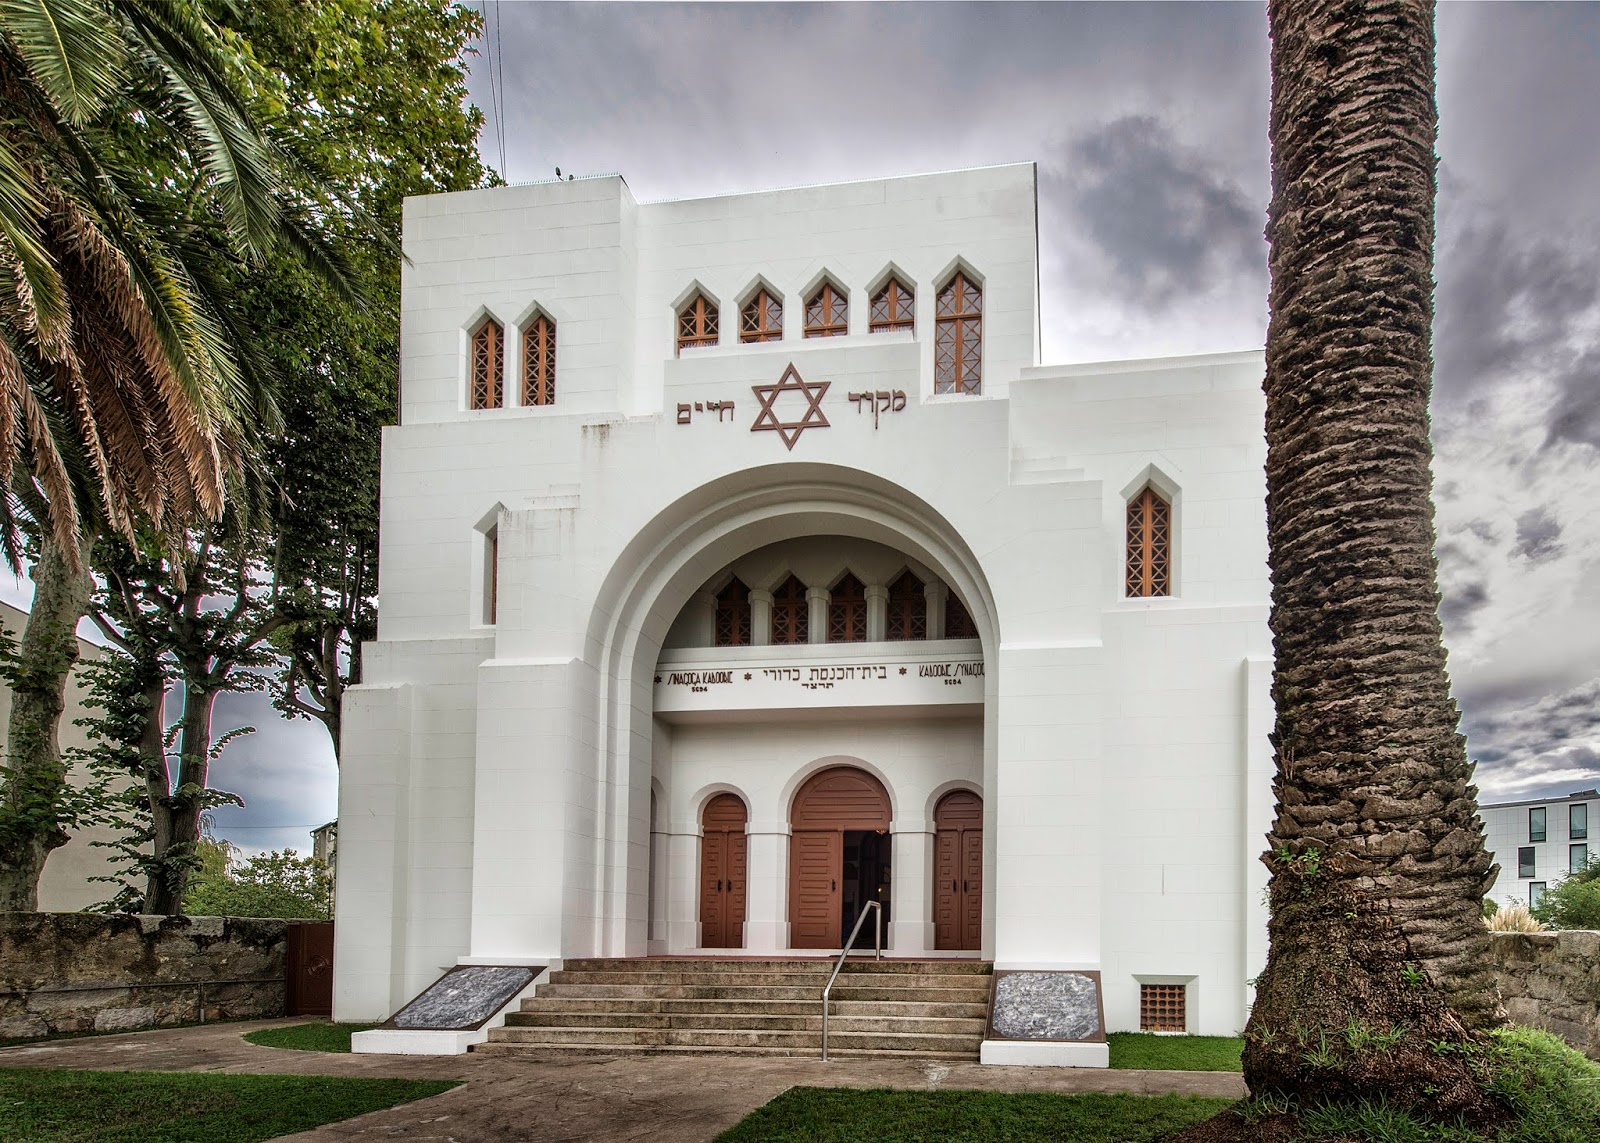 Portugal - patrimoine juif, histoire juive, synagogues, musées ...